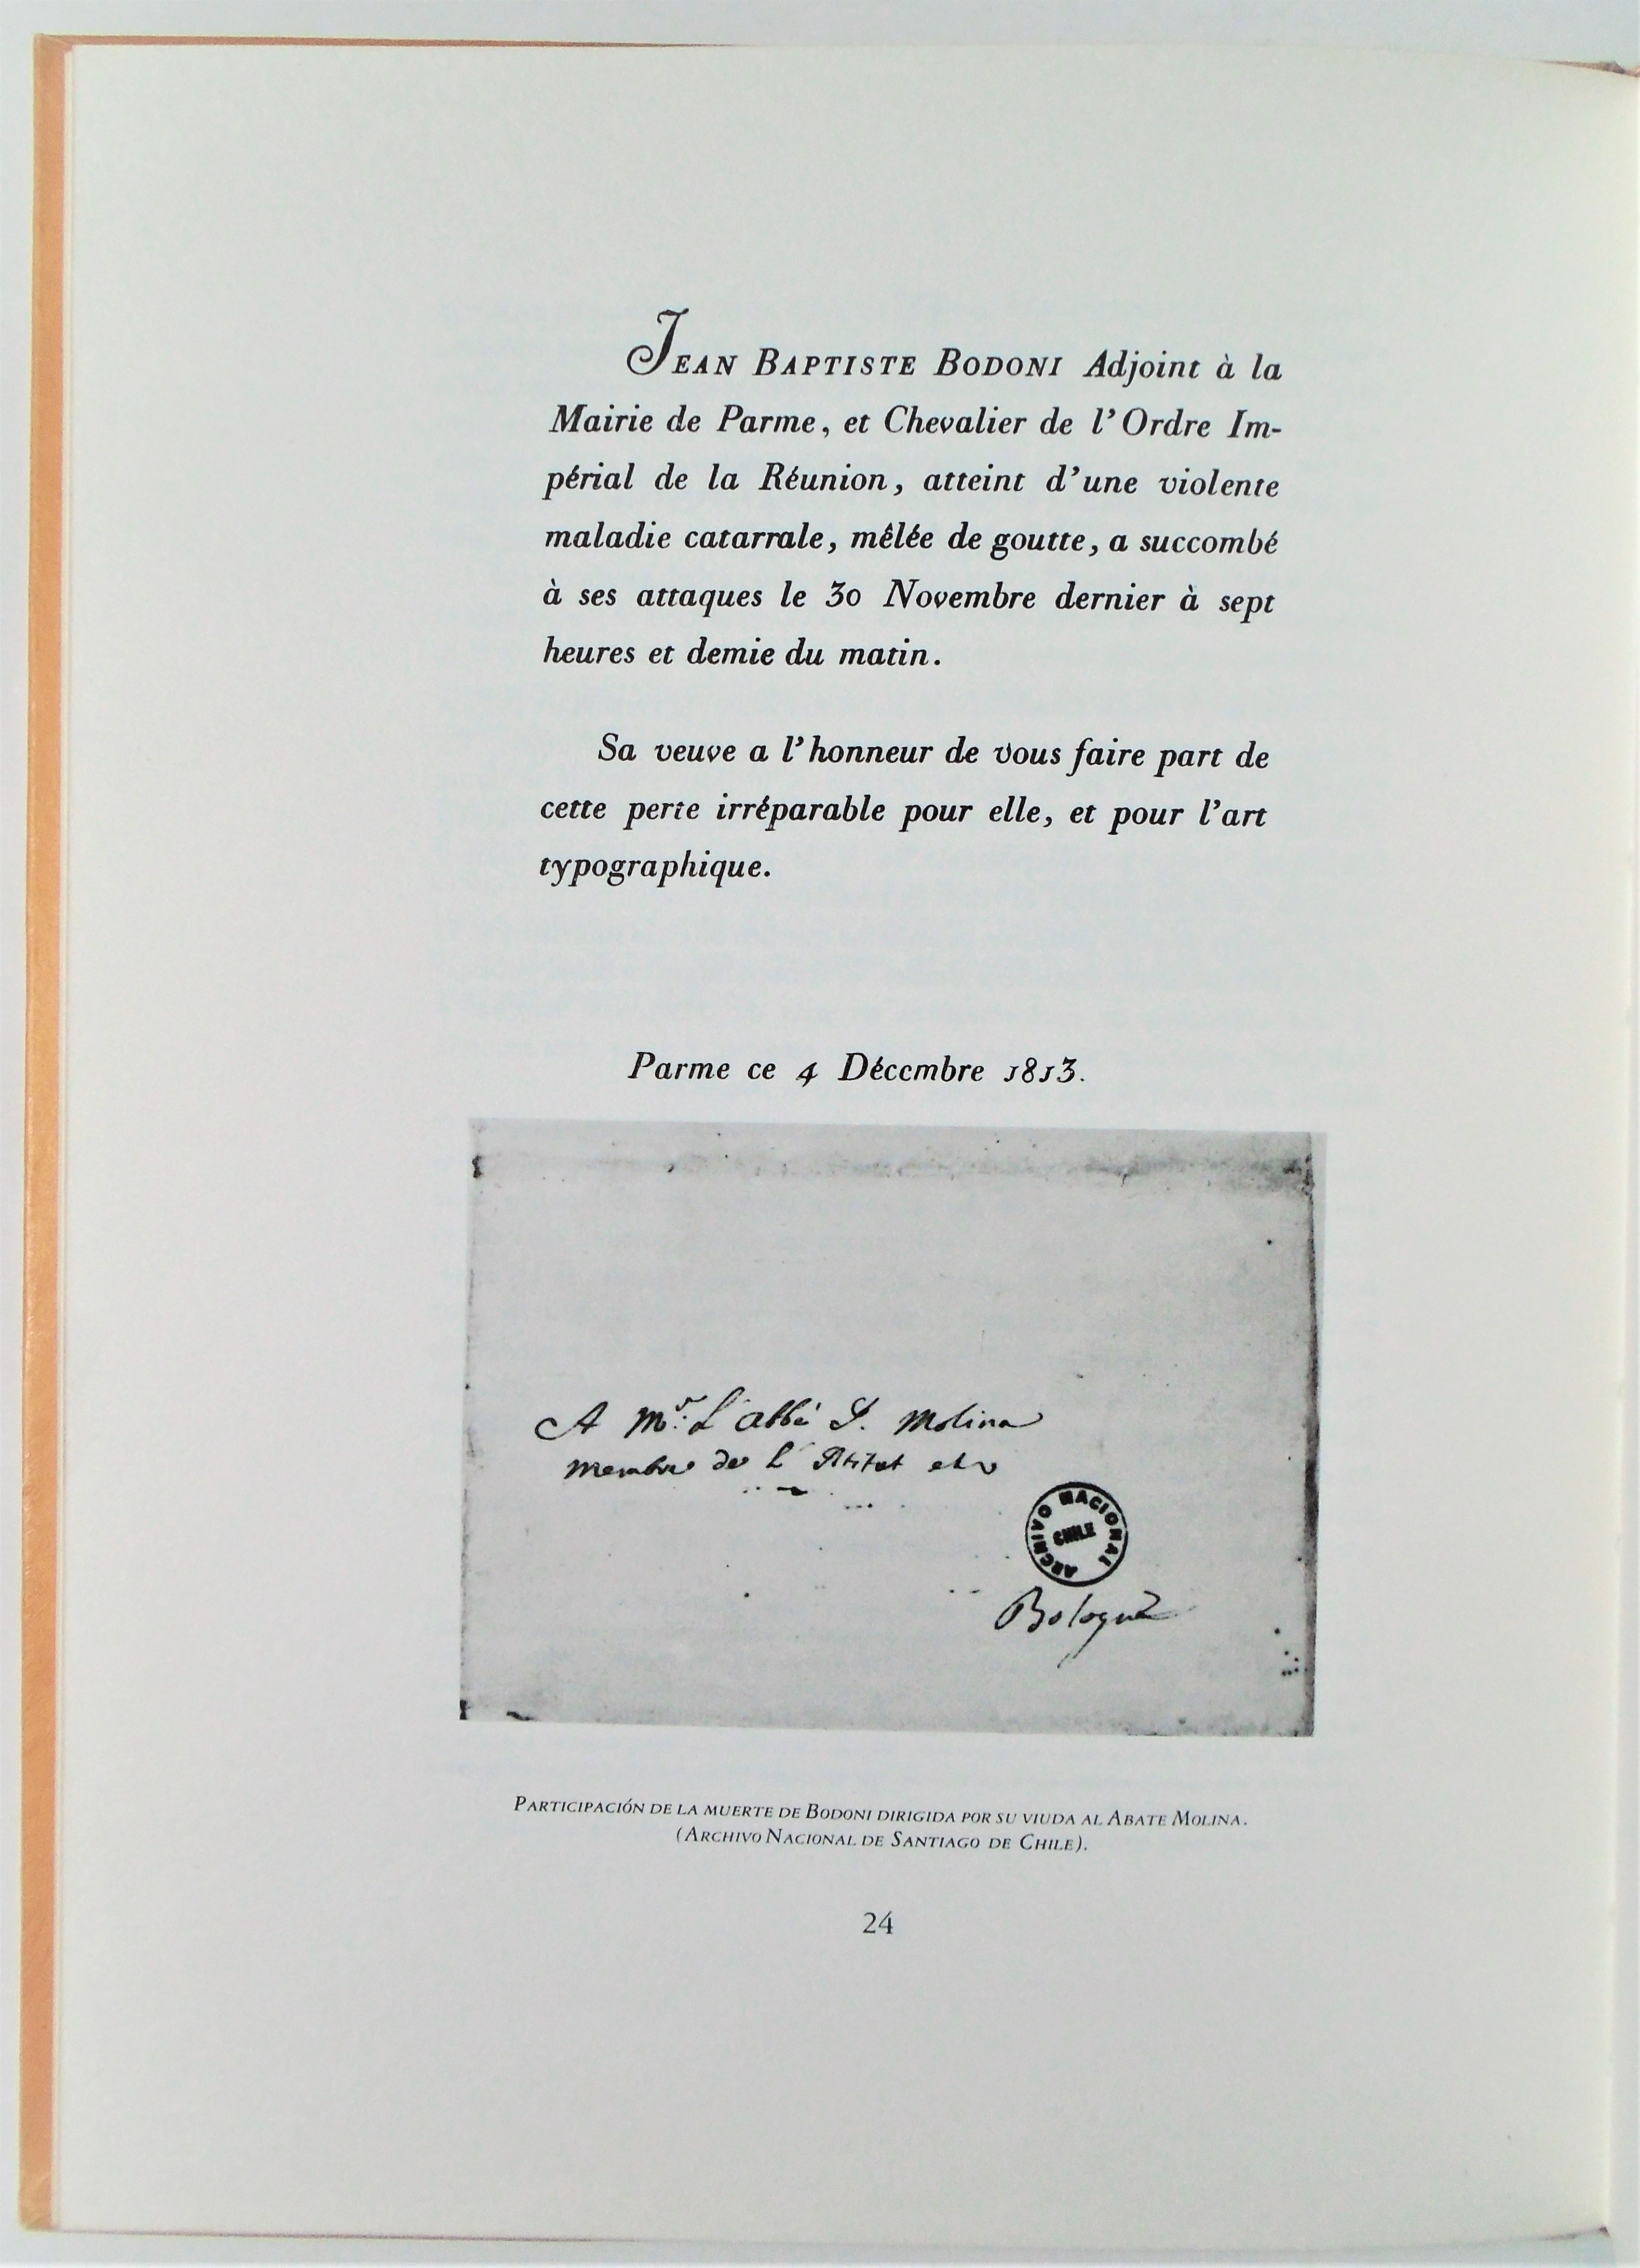 Los padrenuestros en Mapuche publicados por Bodoni (N°63)